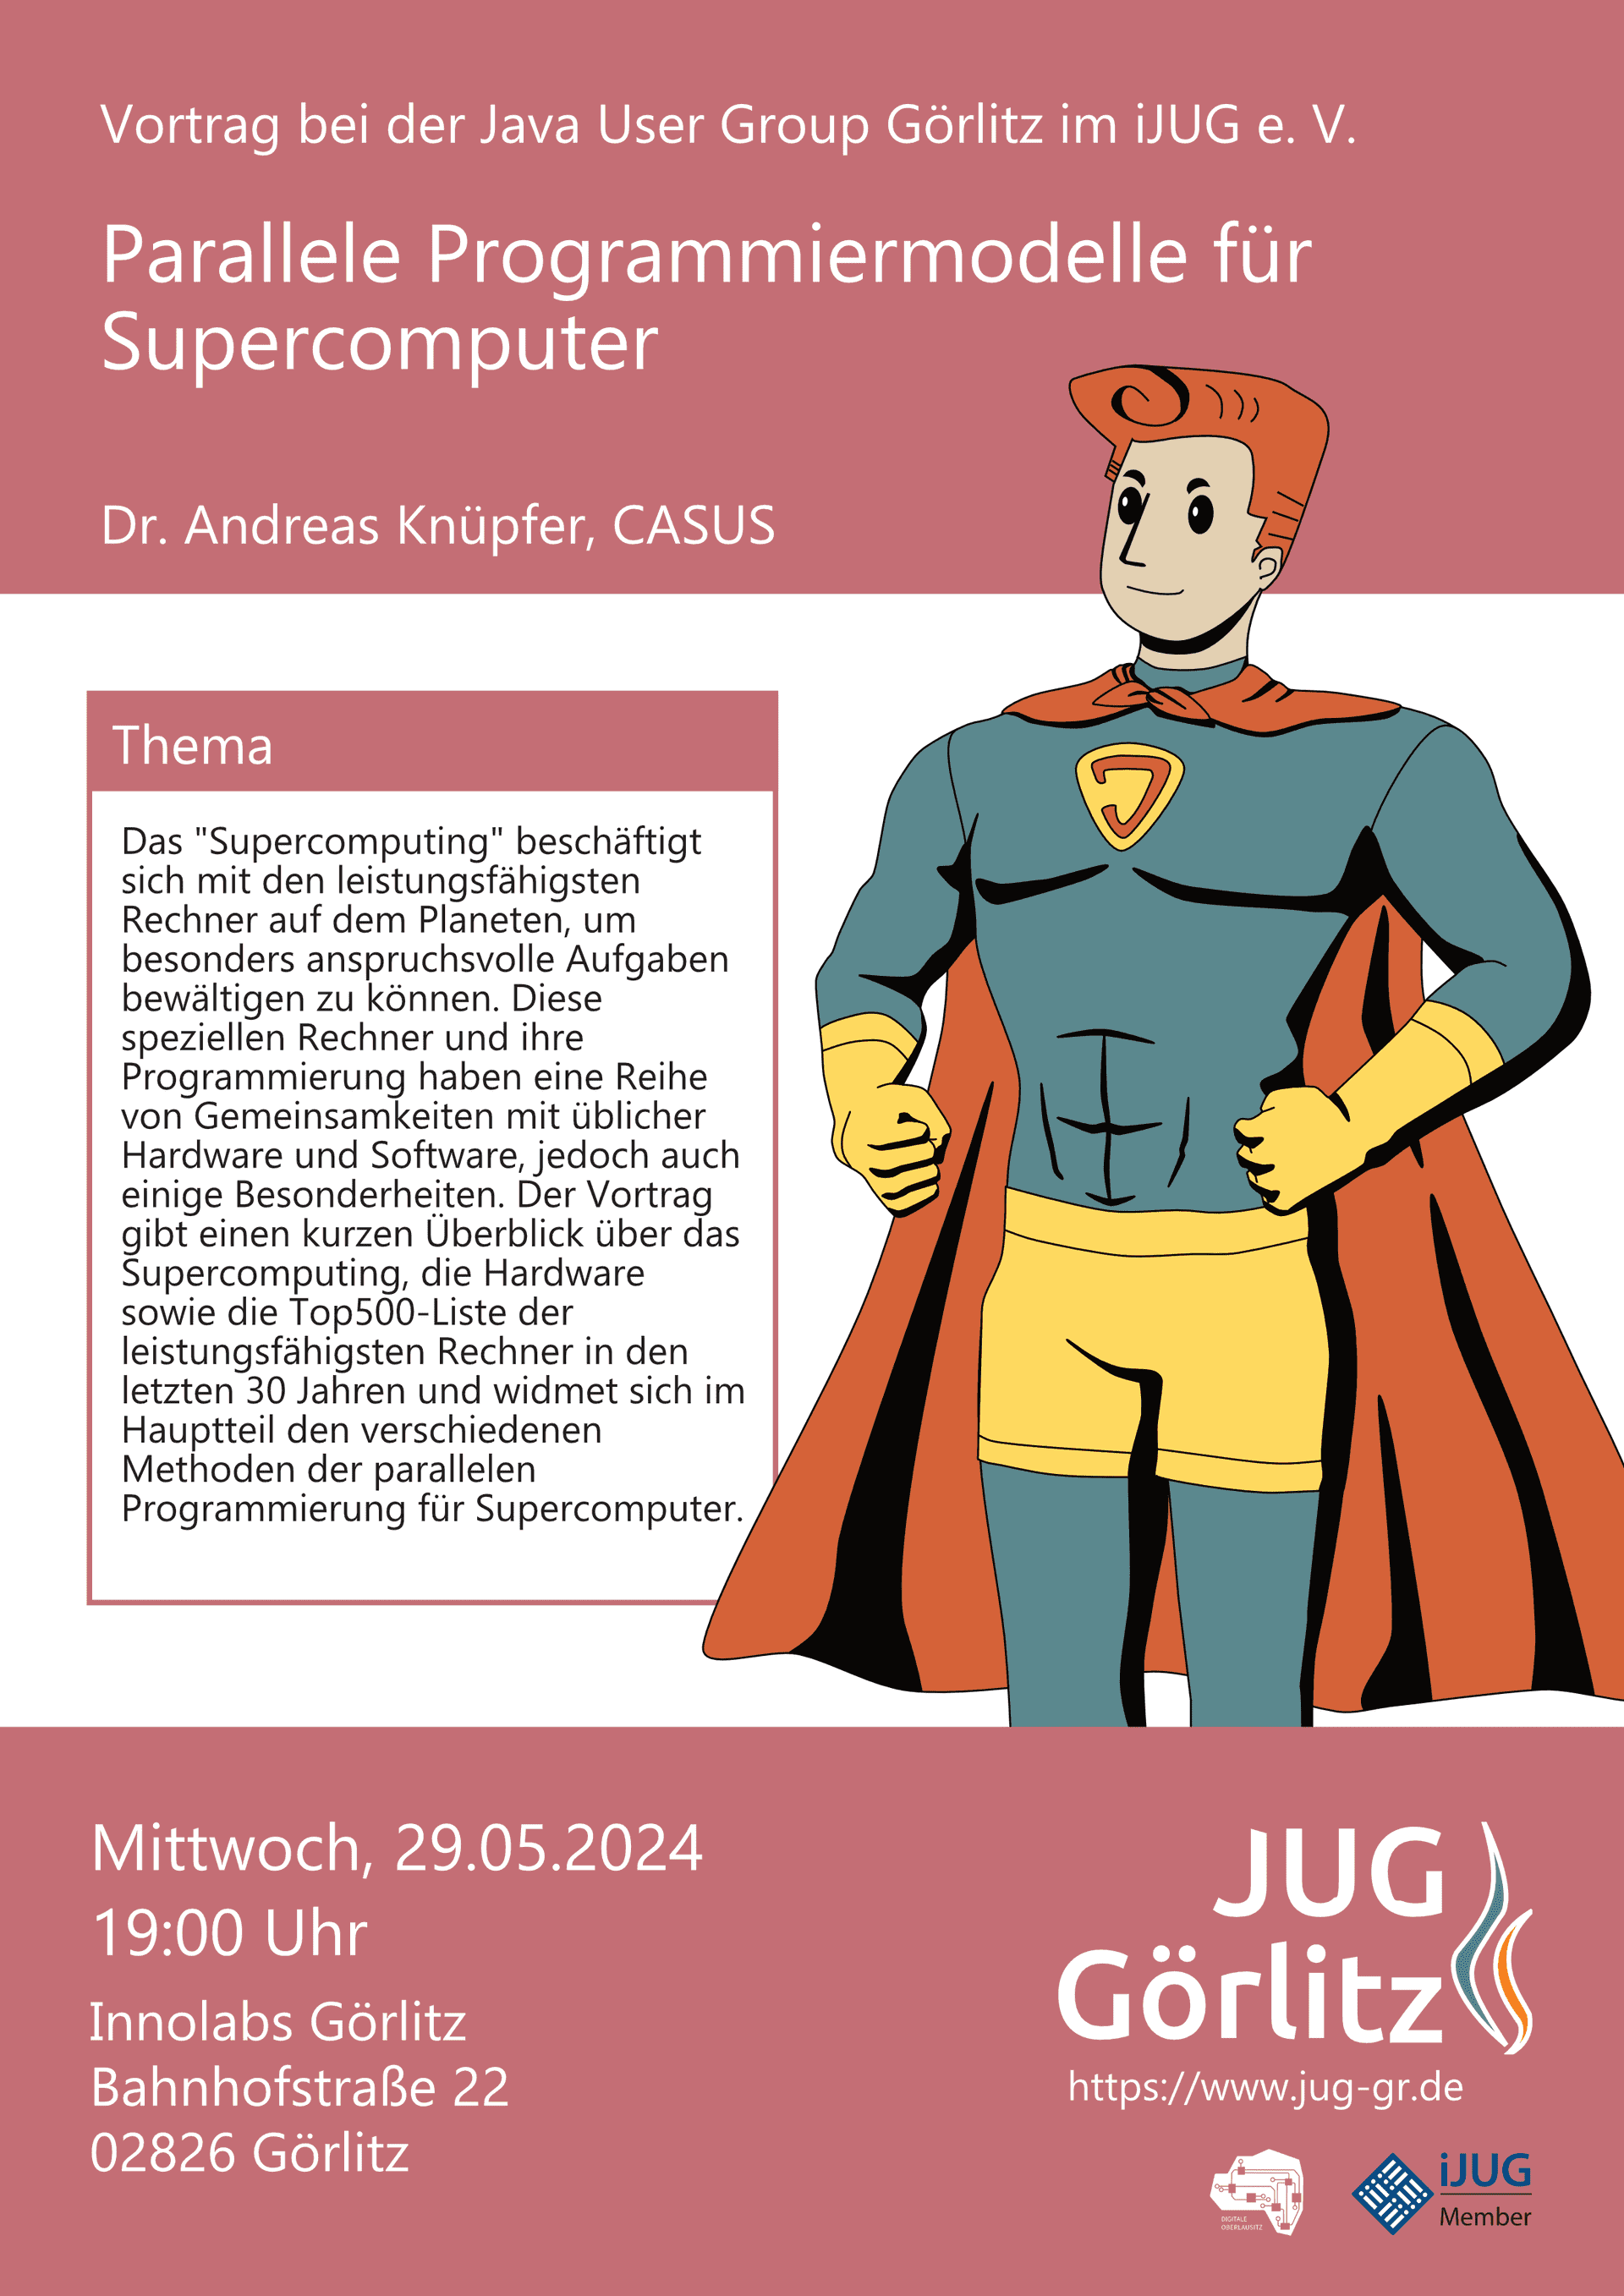 Poster: Jürgen ist gekleidet als superheld mit Handschuhen und Cape und schaut heroisch nach oben.